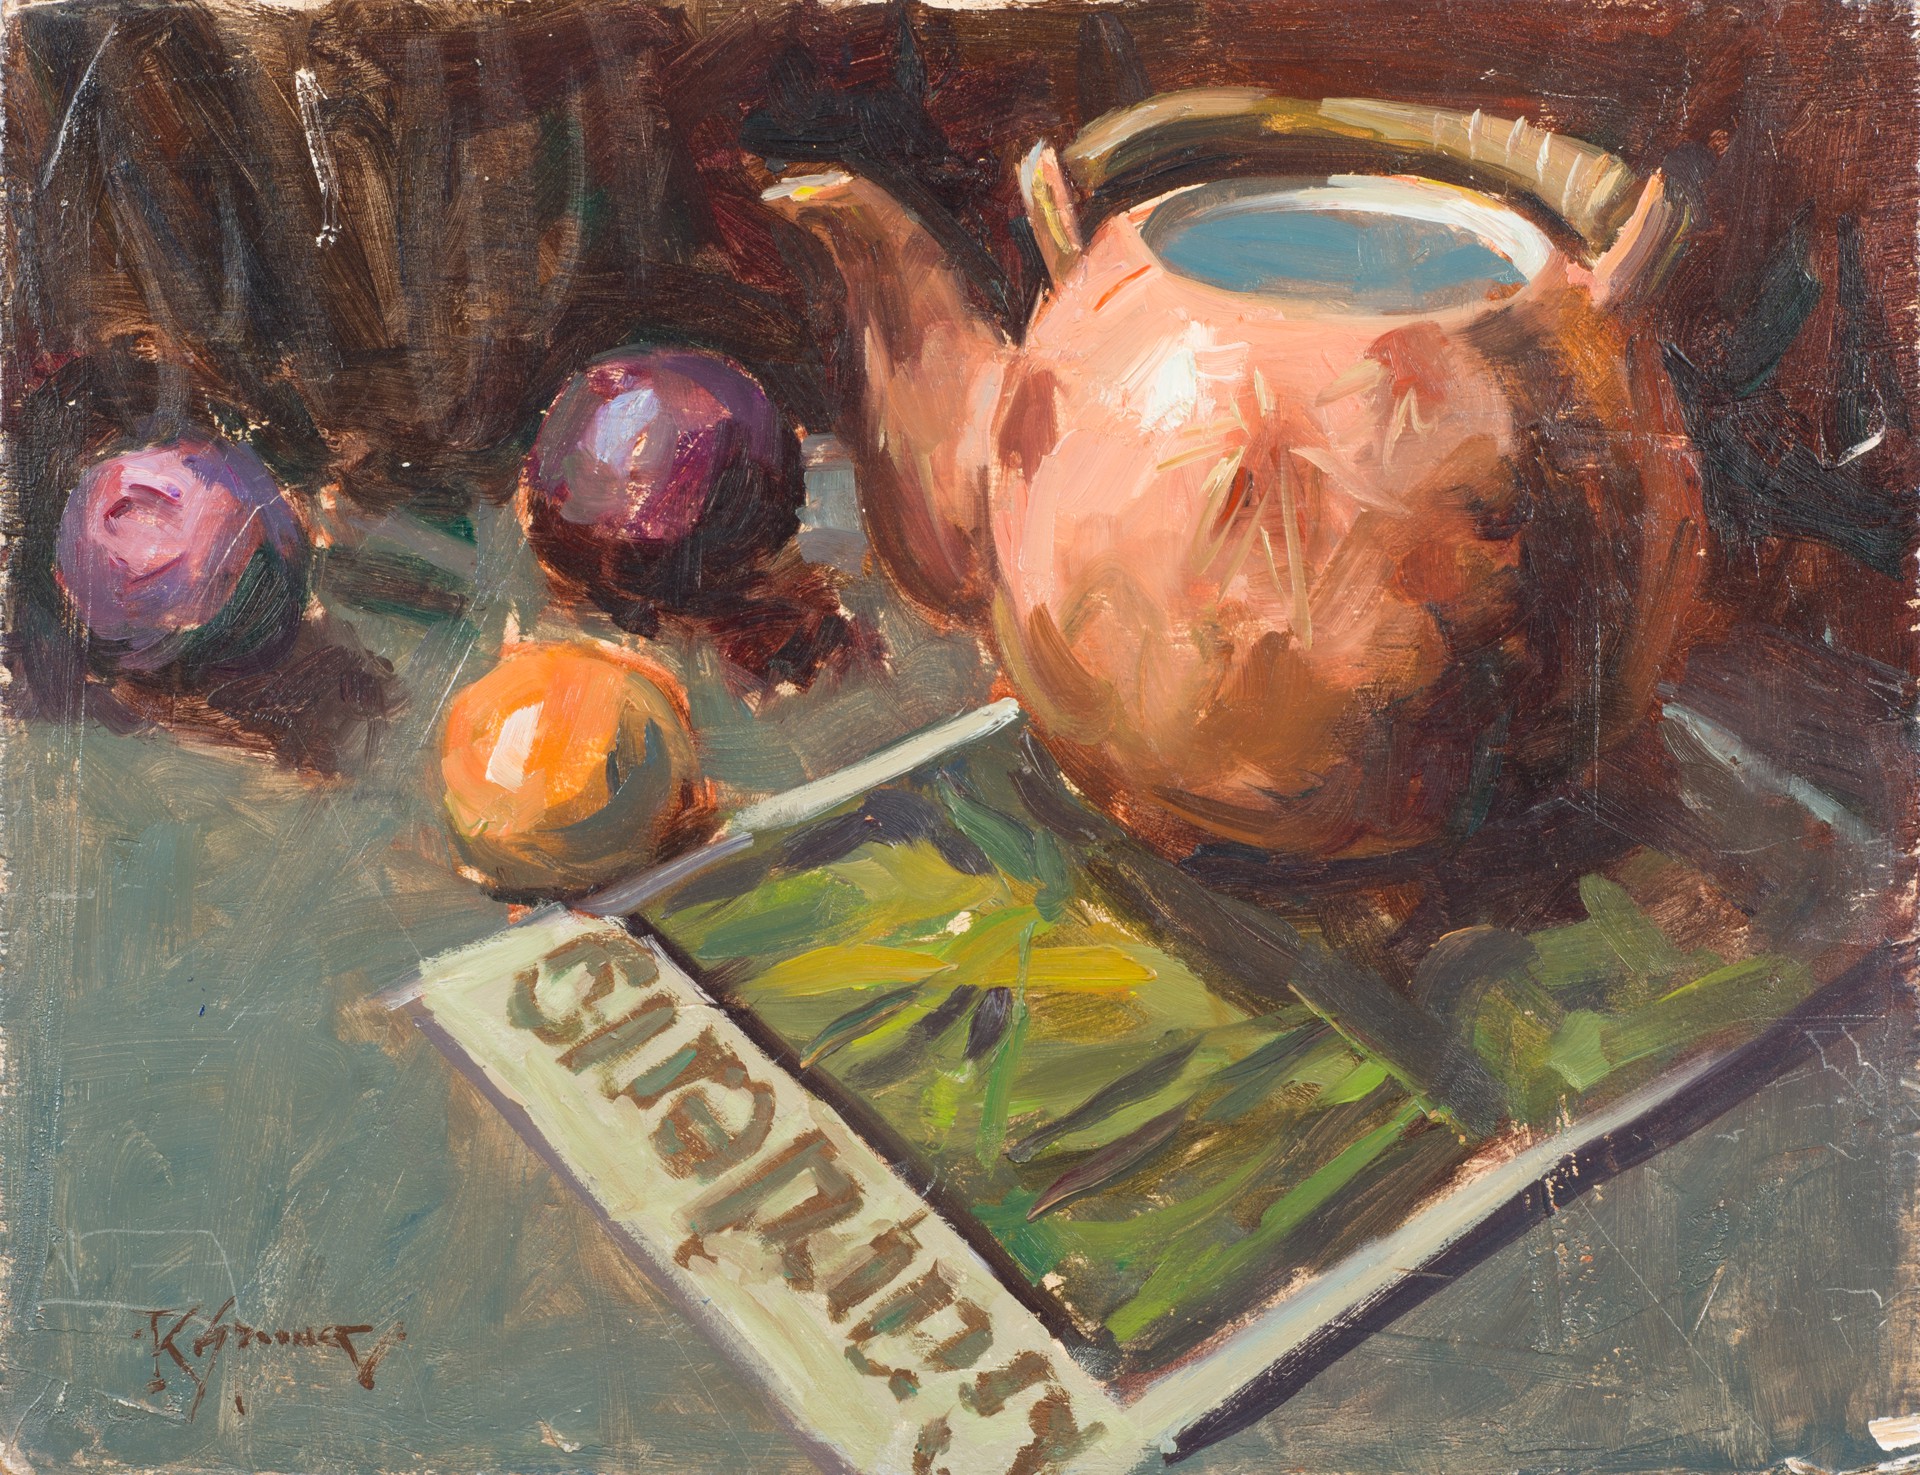 Plum Tea by Robert Spooner